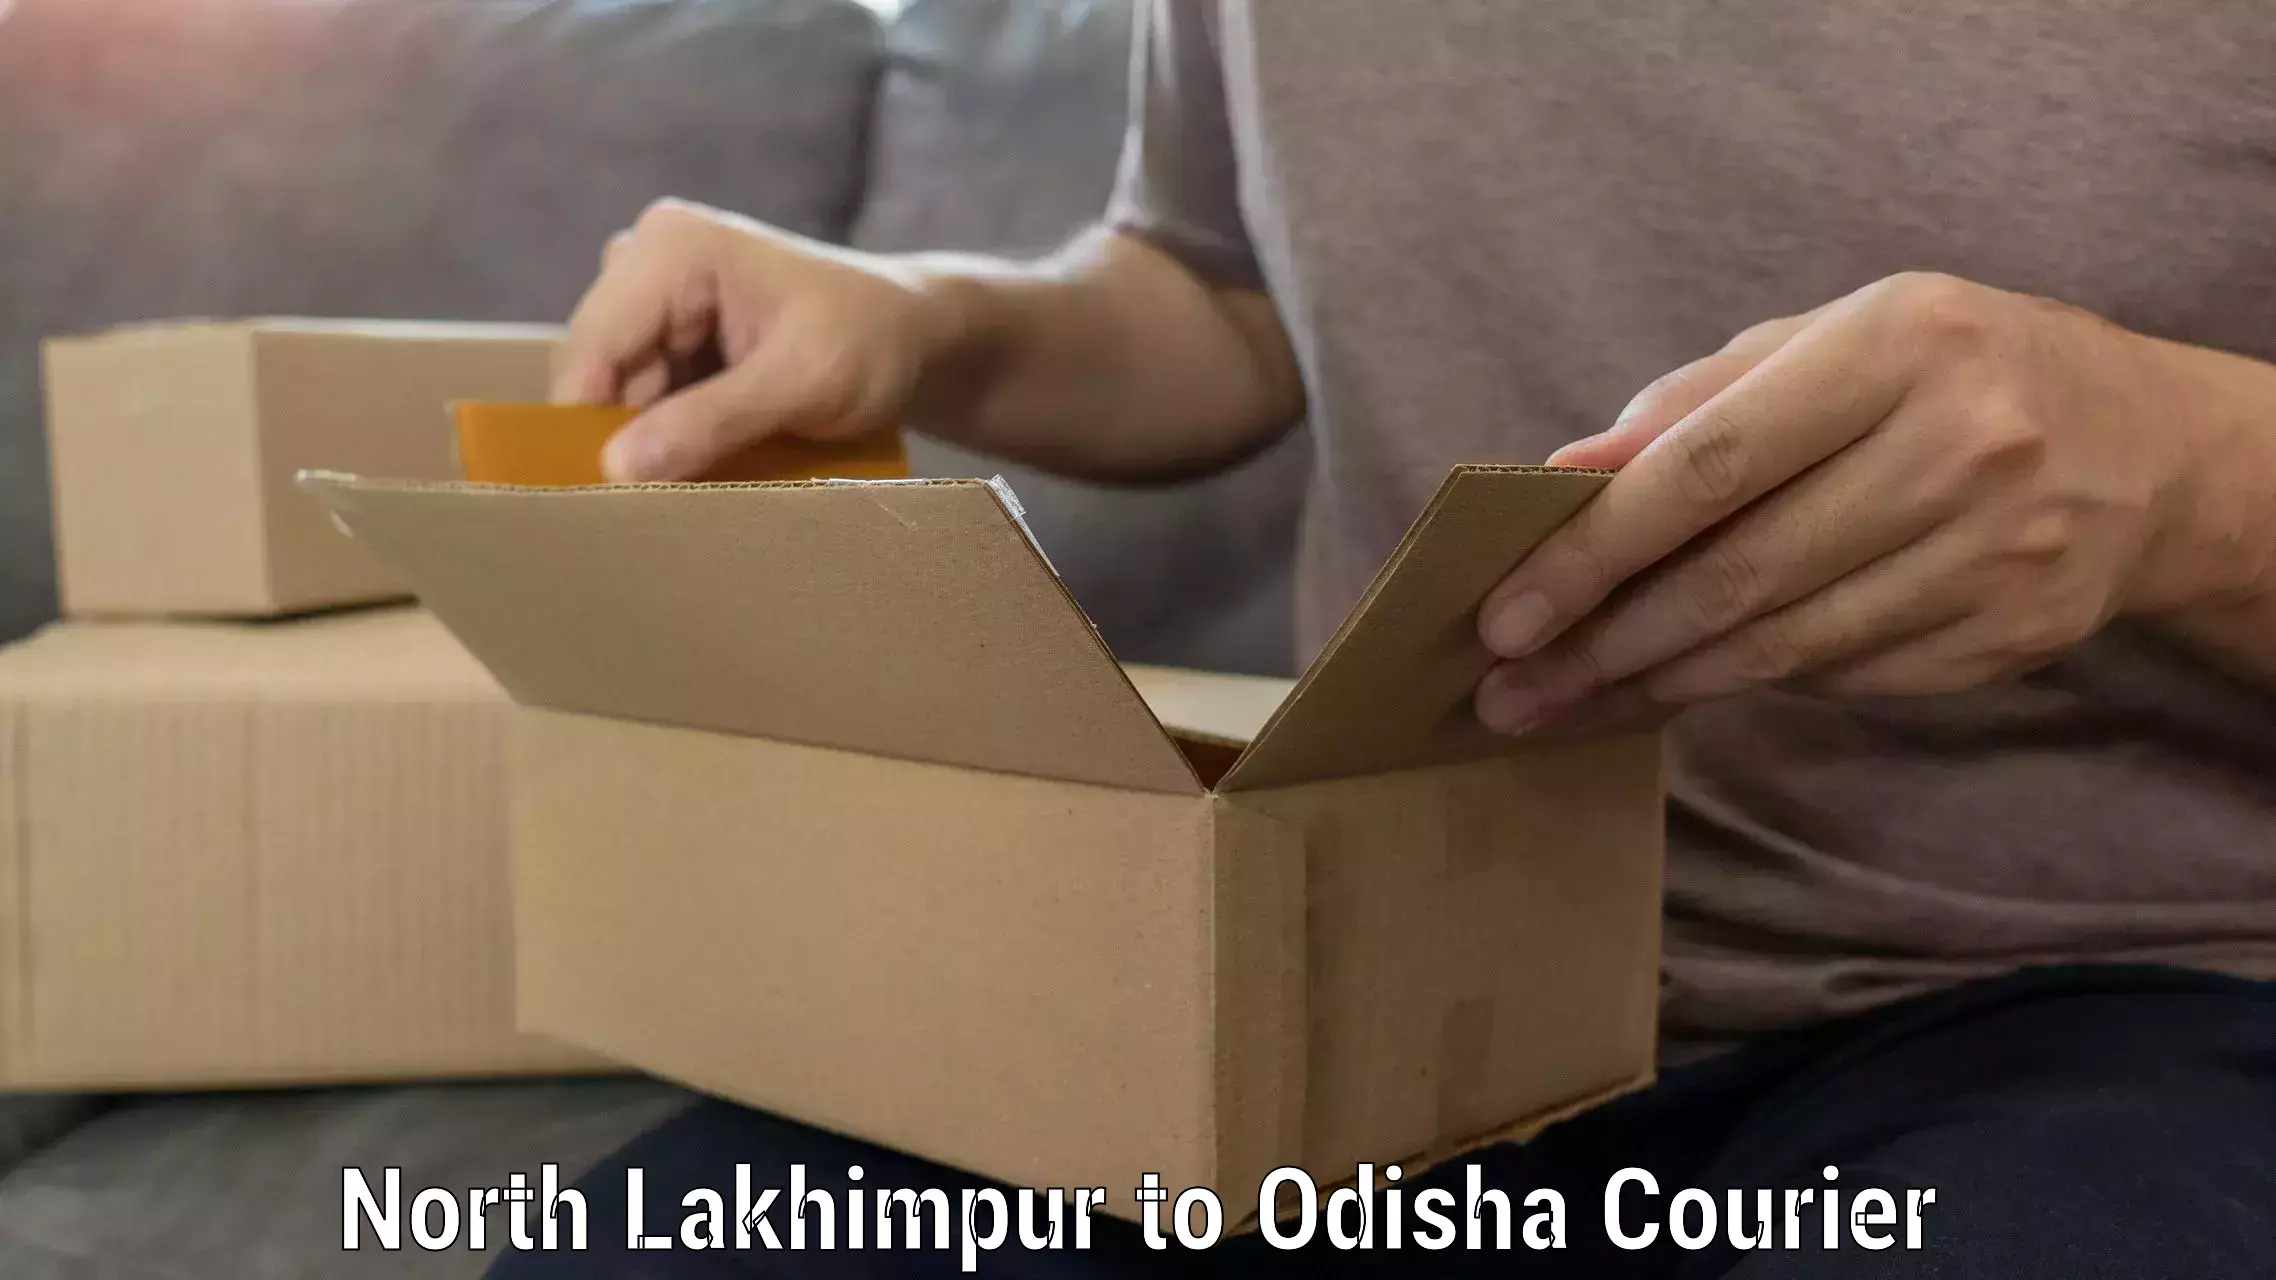 Skilled furniture movers North Lakhimpur to Kuchinda